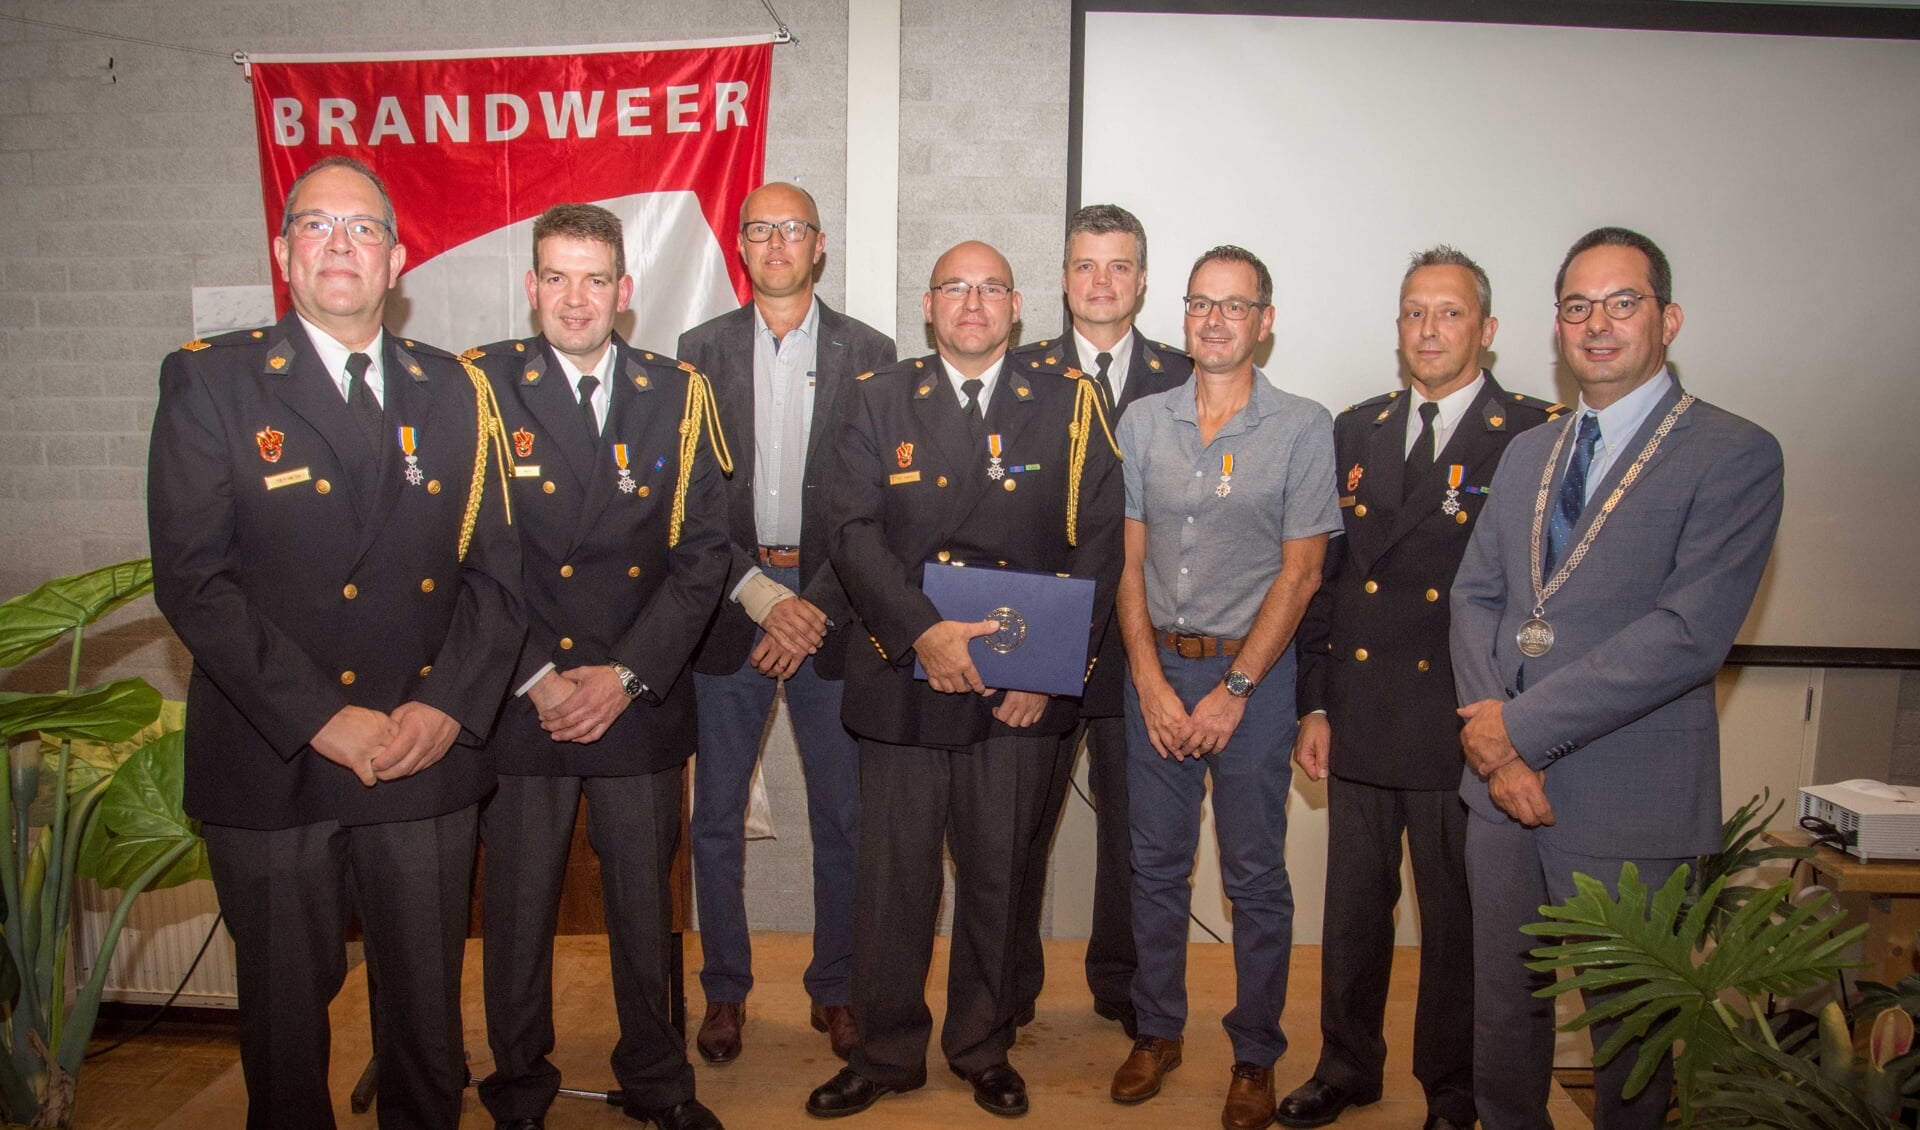 Burgemeester Adriaansen met de gedecoreerde brandweervrijwilligers.